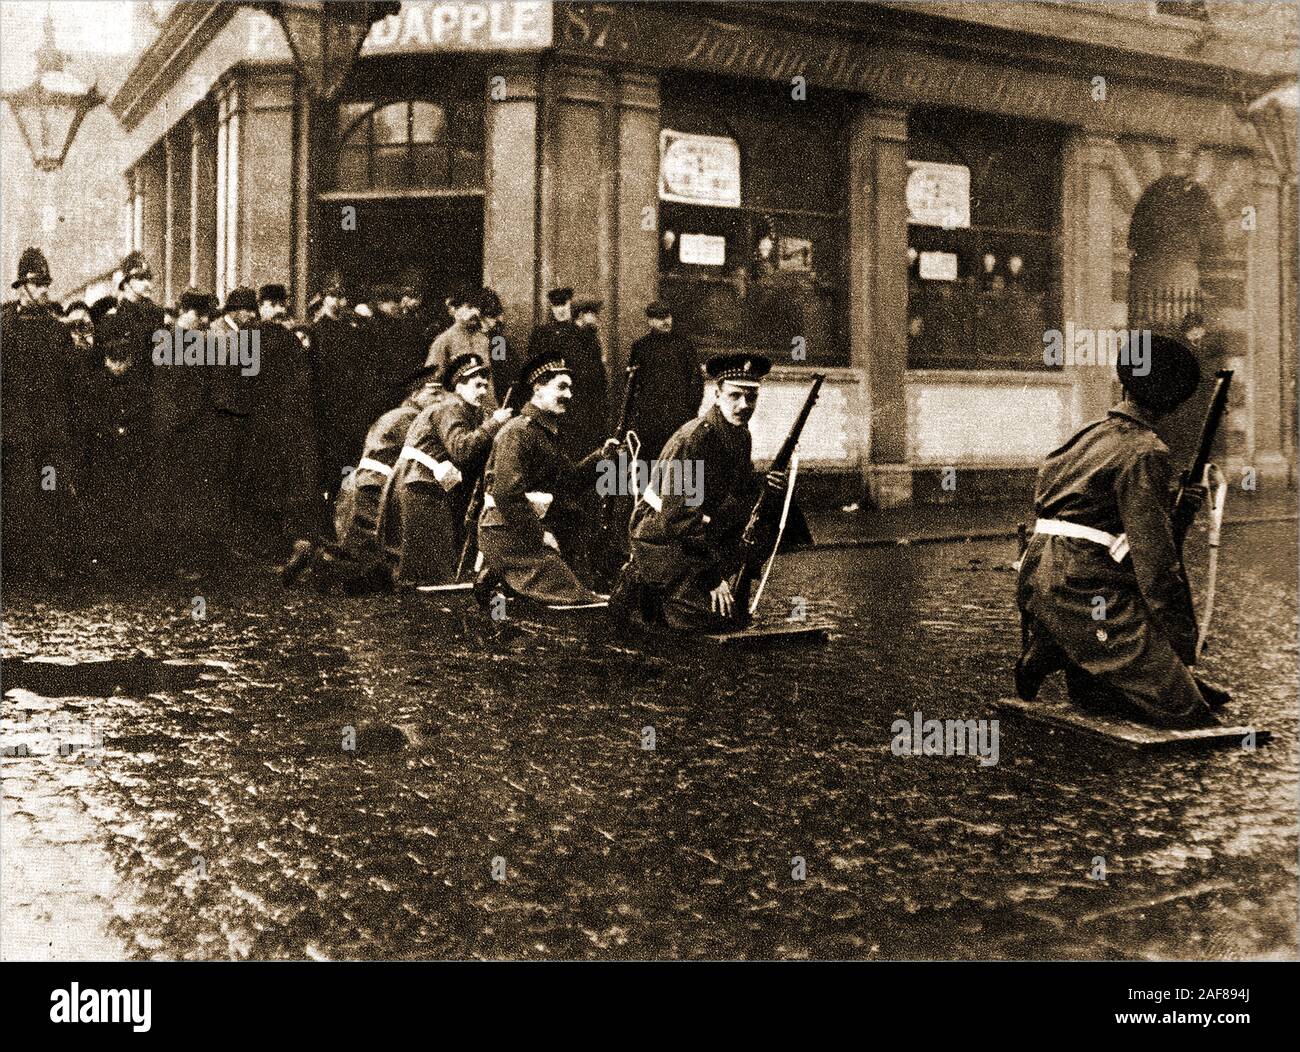 Seige of Sidney Street - le siège de Sidney Street (janvier 1911), également connu sous le nom de bataille de Stepney, a pris part à l'extrémité est de Londres entre la police britannique soutenue par des soldats, à la suite d'un vol et du meurtre de trois officiers de police par des révolutionnaires lettons. Cette photo historique montre des soldats qui bloquent la sortie des rues. Banque D'Images